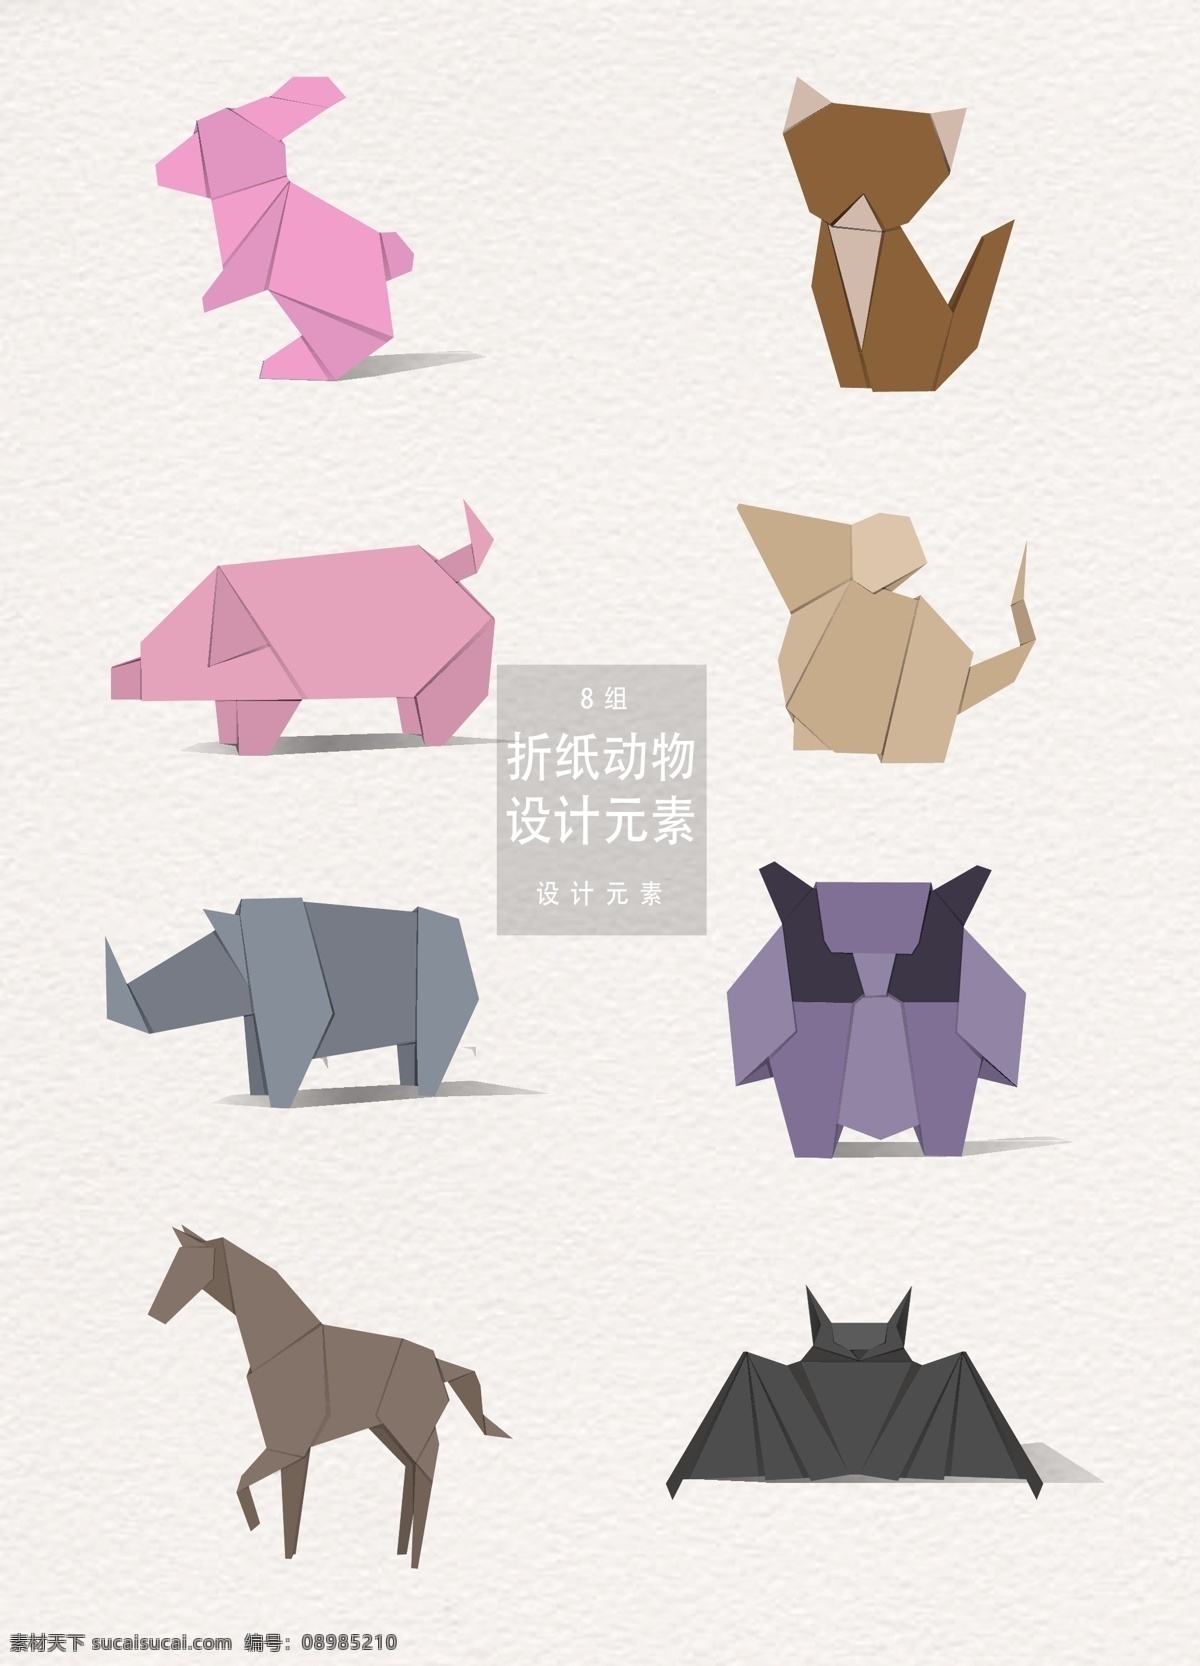 折纸 动物 矢量 元素 设计元素 兔子 猫咪 折纸动物 小猪 老鼠 犀牛 马 蝙蝠